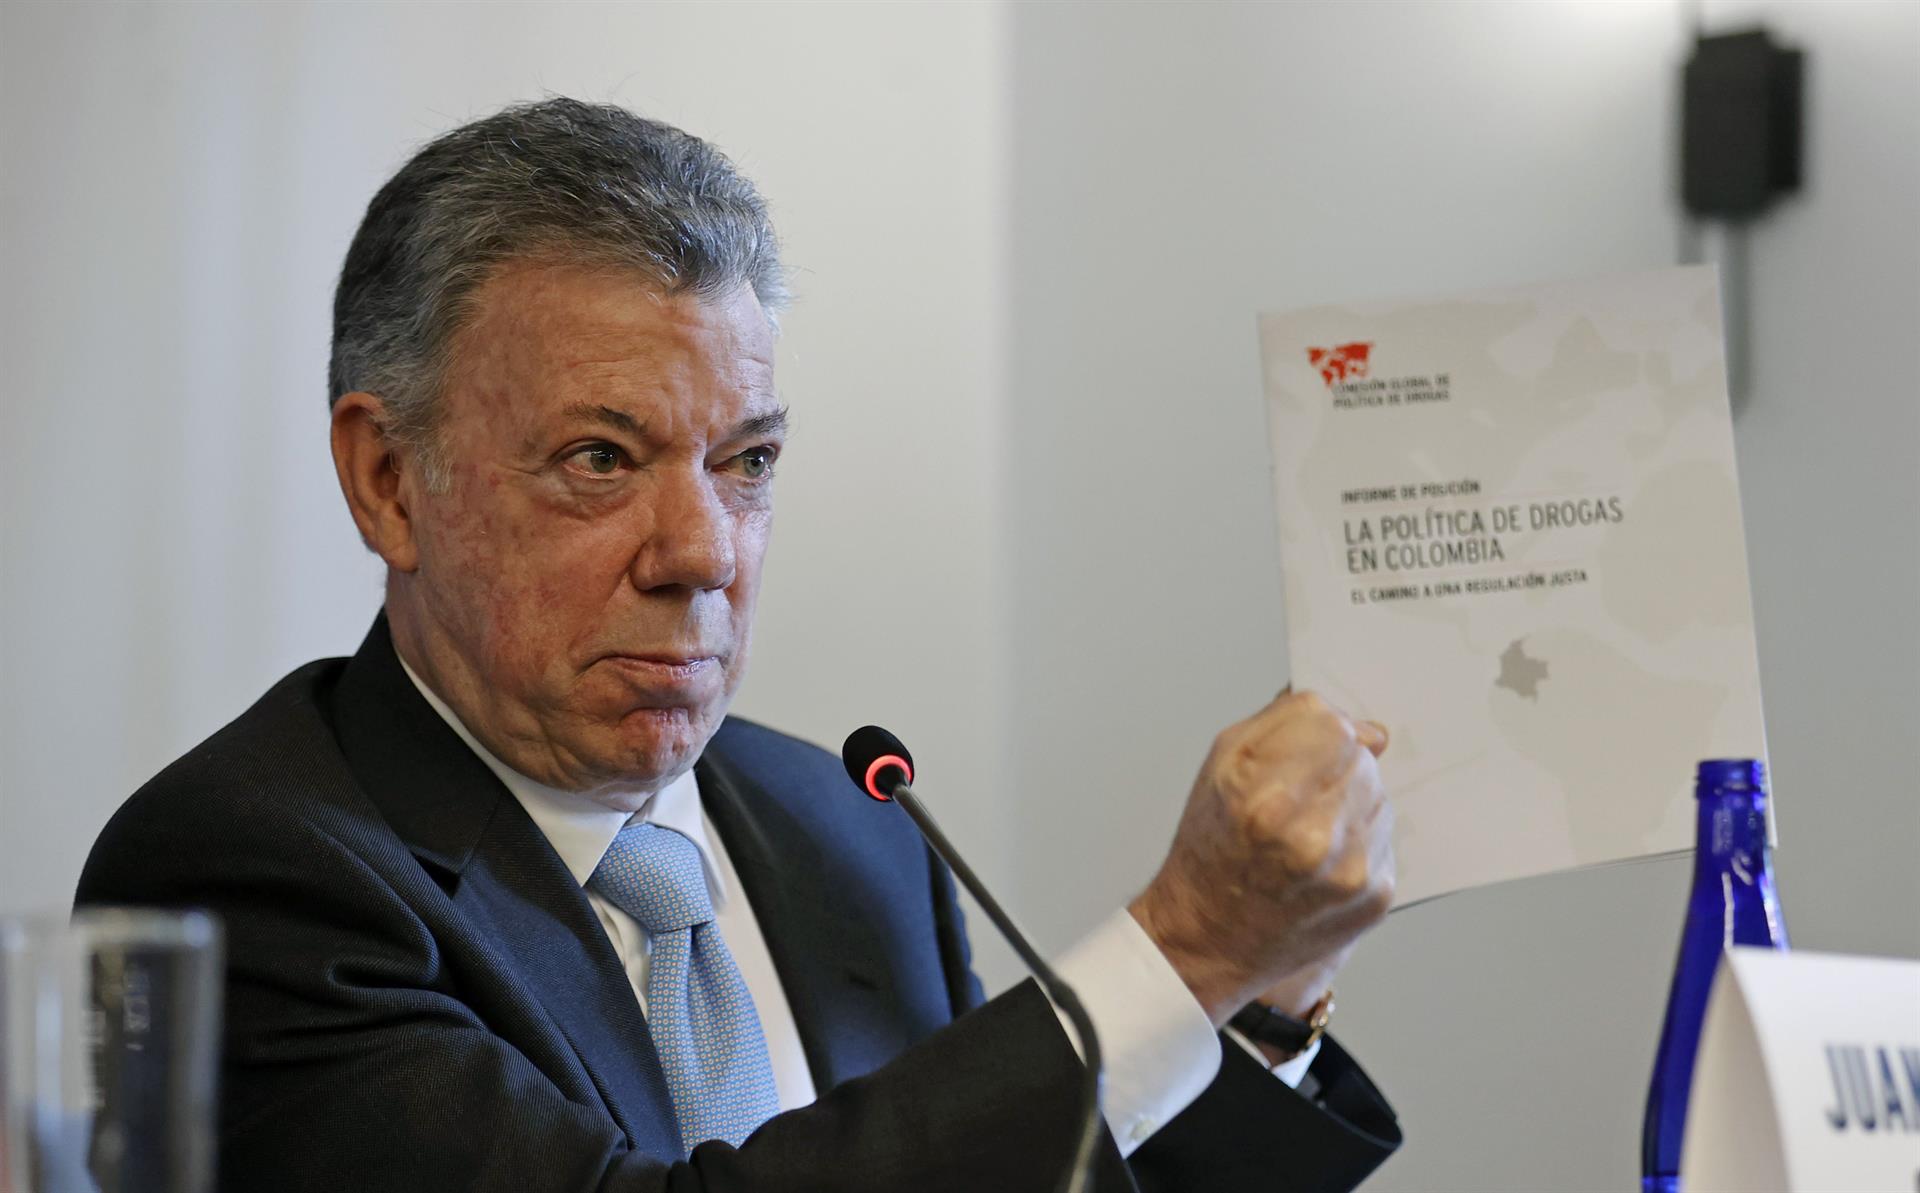 El expresidente colombiano Juan Manuel Santos habla durante la presentación del informe sobre Colombia de la Comisión Global de Política de Drogas, hoy en Bogotá (Colombia). EFE/Mauricio Dueñas Castañeda